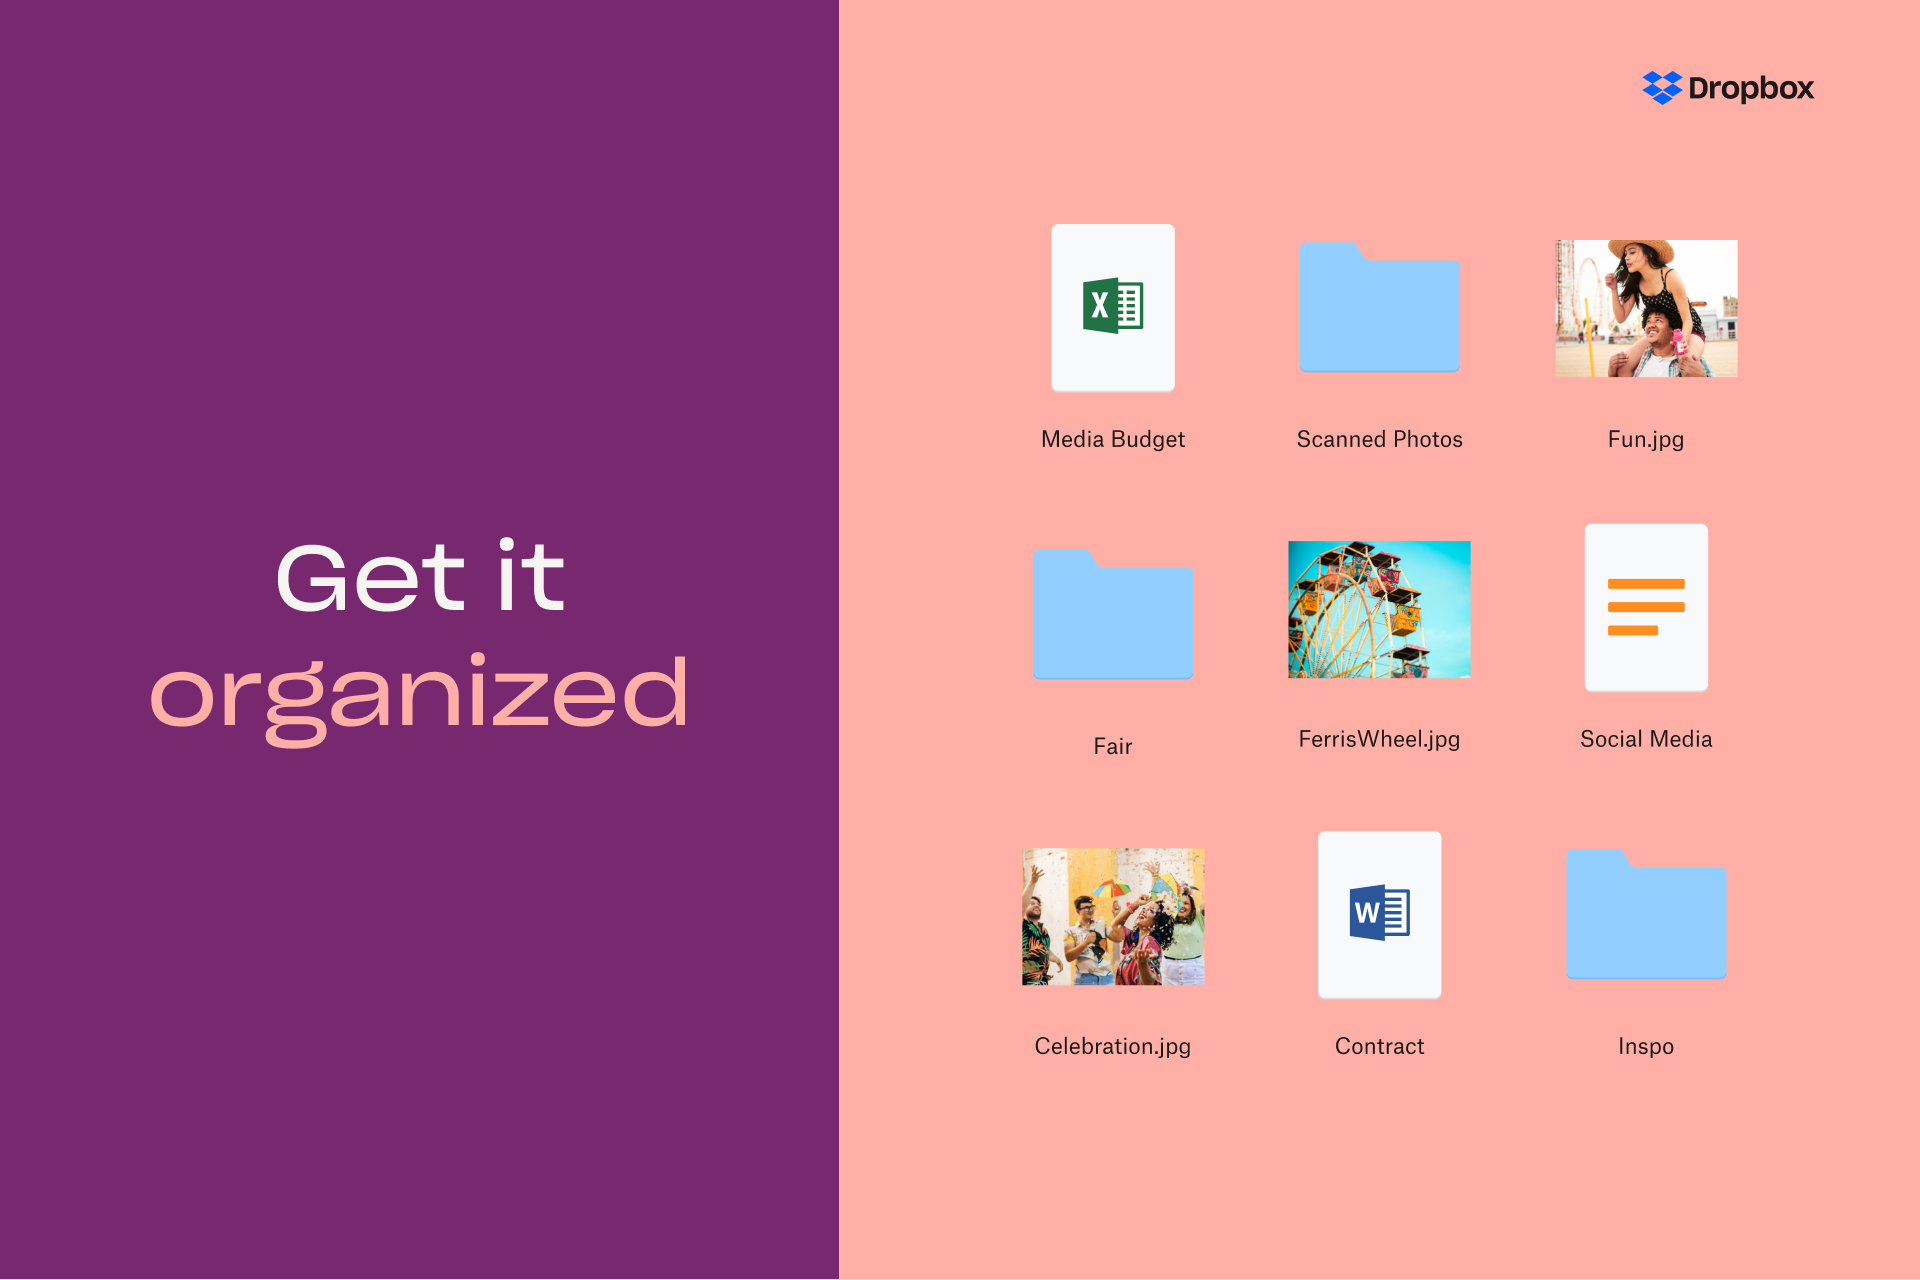 Una raccolta di diversi tipi di file accanto alle parole “Get it organized” (Organizzati)